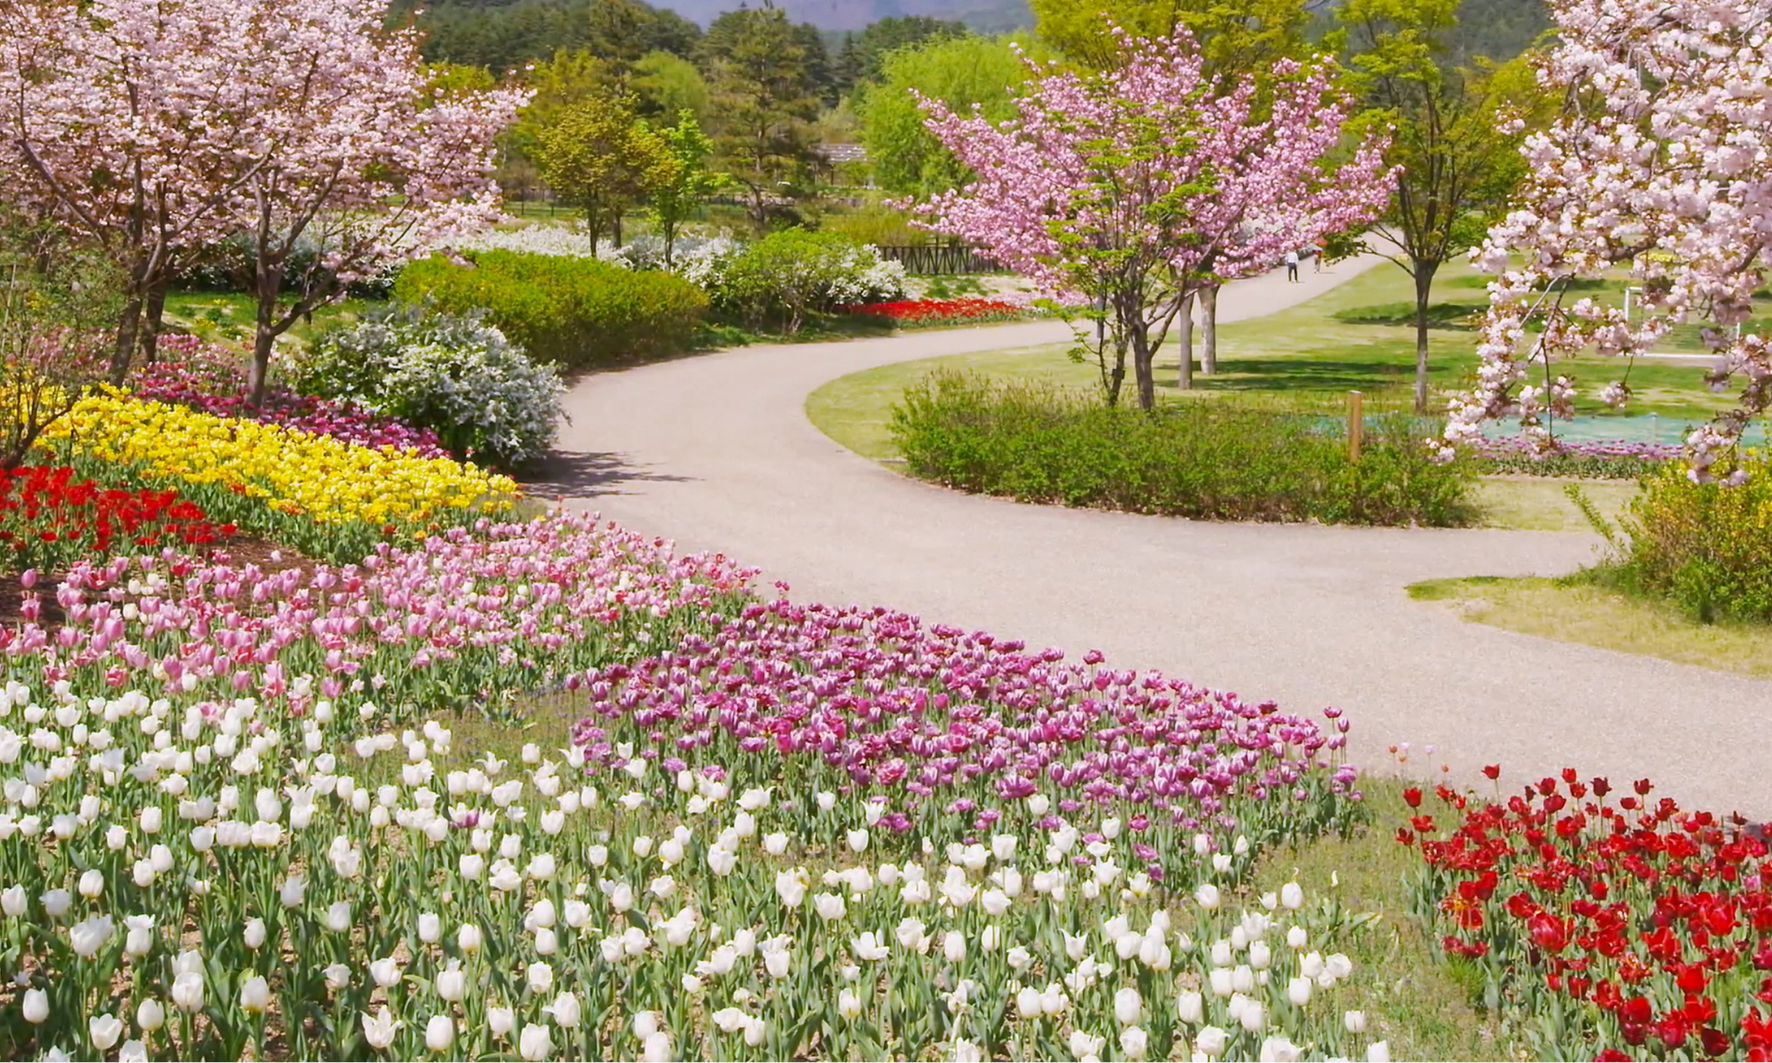 Aleja w parku otoczona kwiatami i kwitnącymi drzewami.